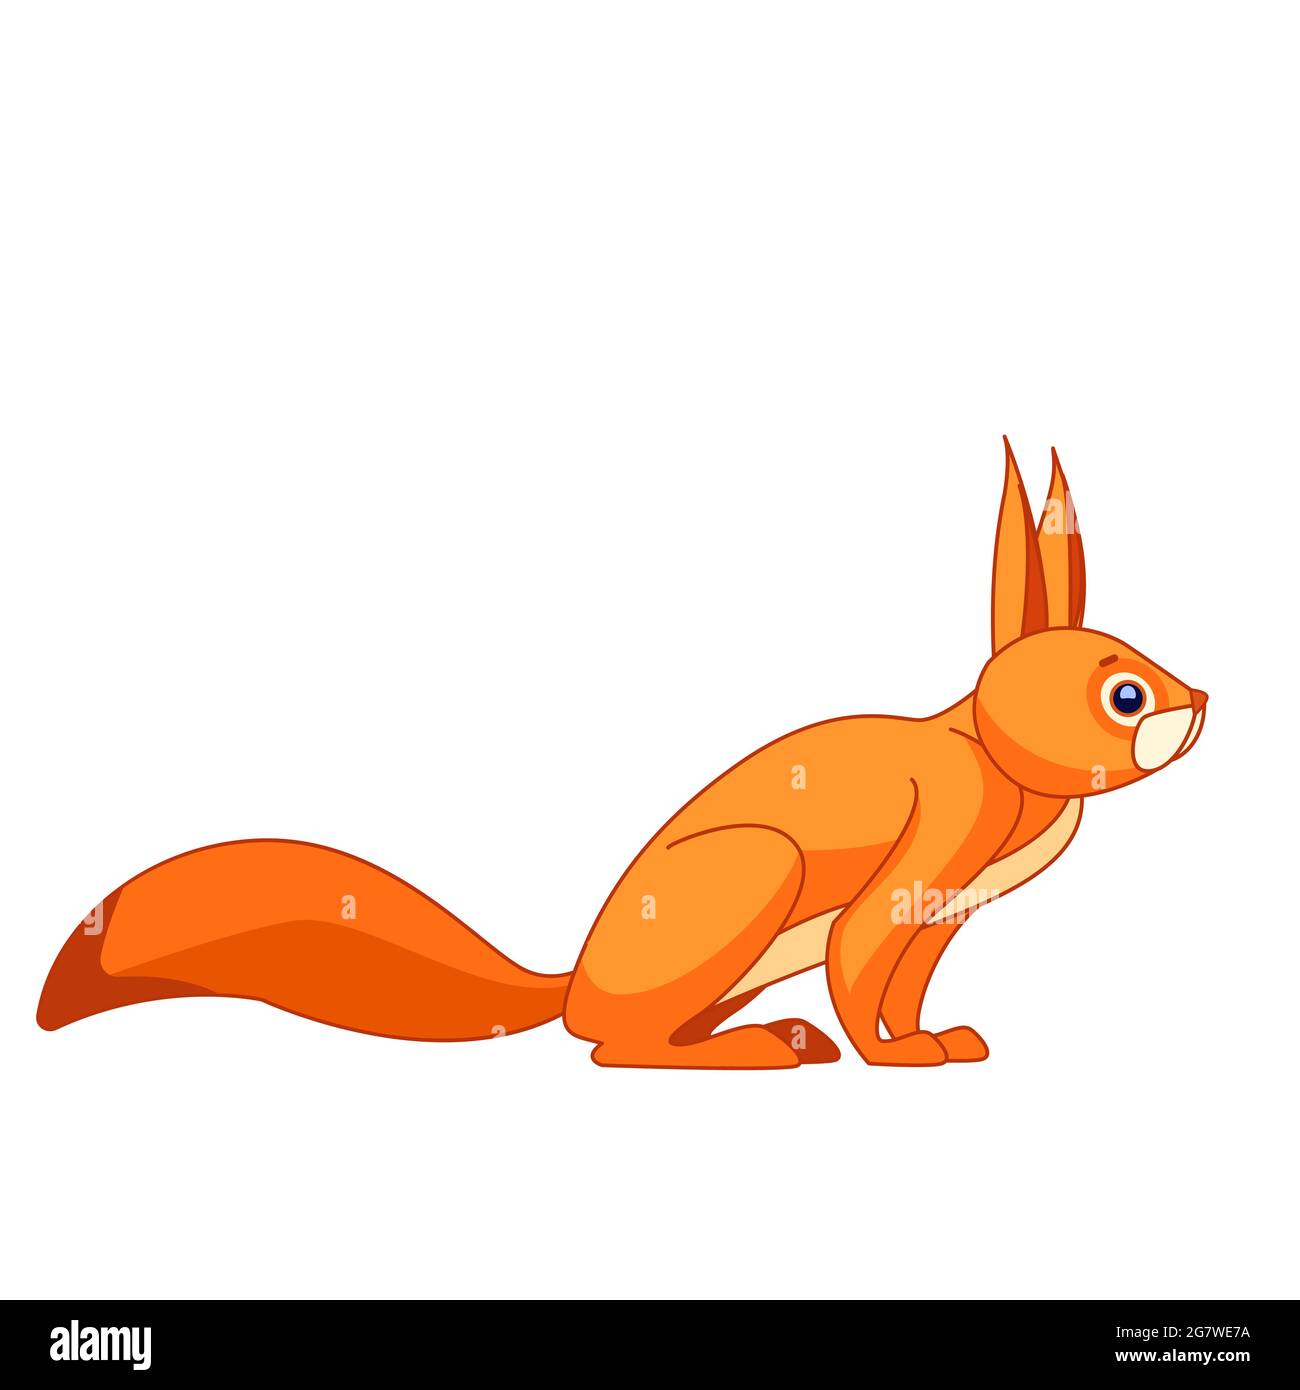 Eichhörnchen beobachtet neugierig. Cartoon-Charakter eines Nagetier Säugetier Tier. Ein wildes Waldgeschöpf mit orangefarbenem Fell. Seitenansicht. Vektorgrafik flach Stock Vektor